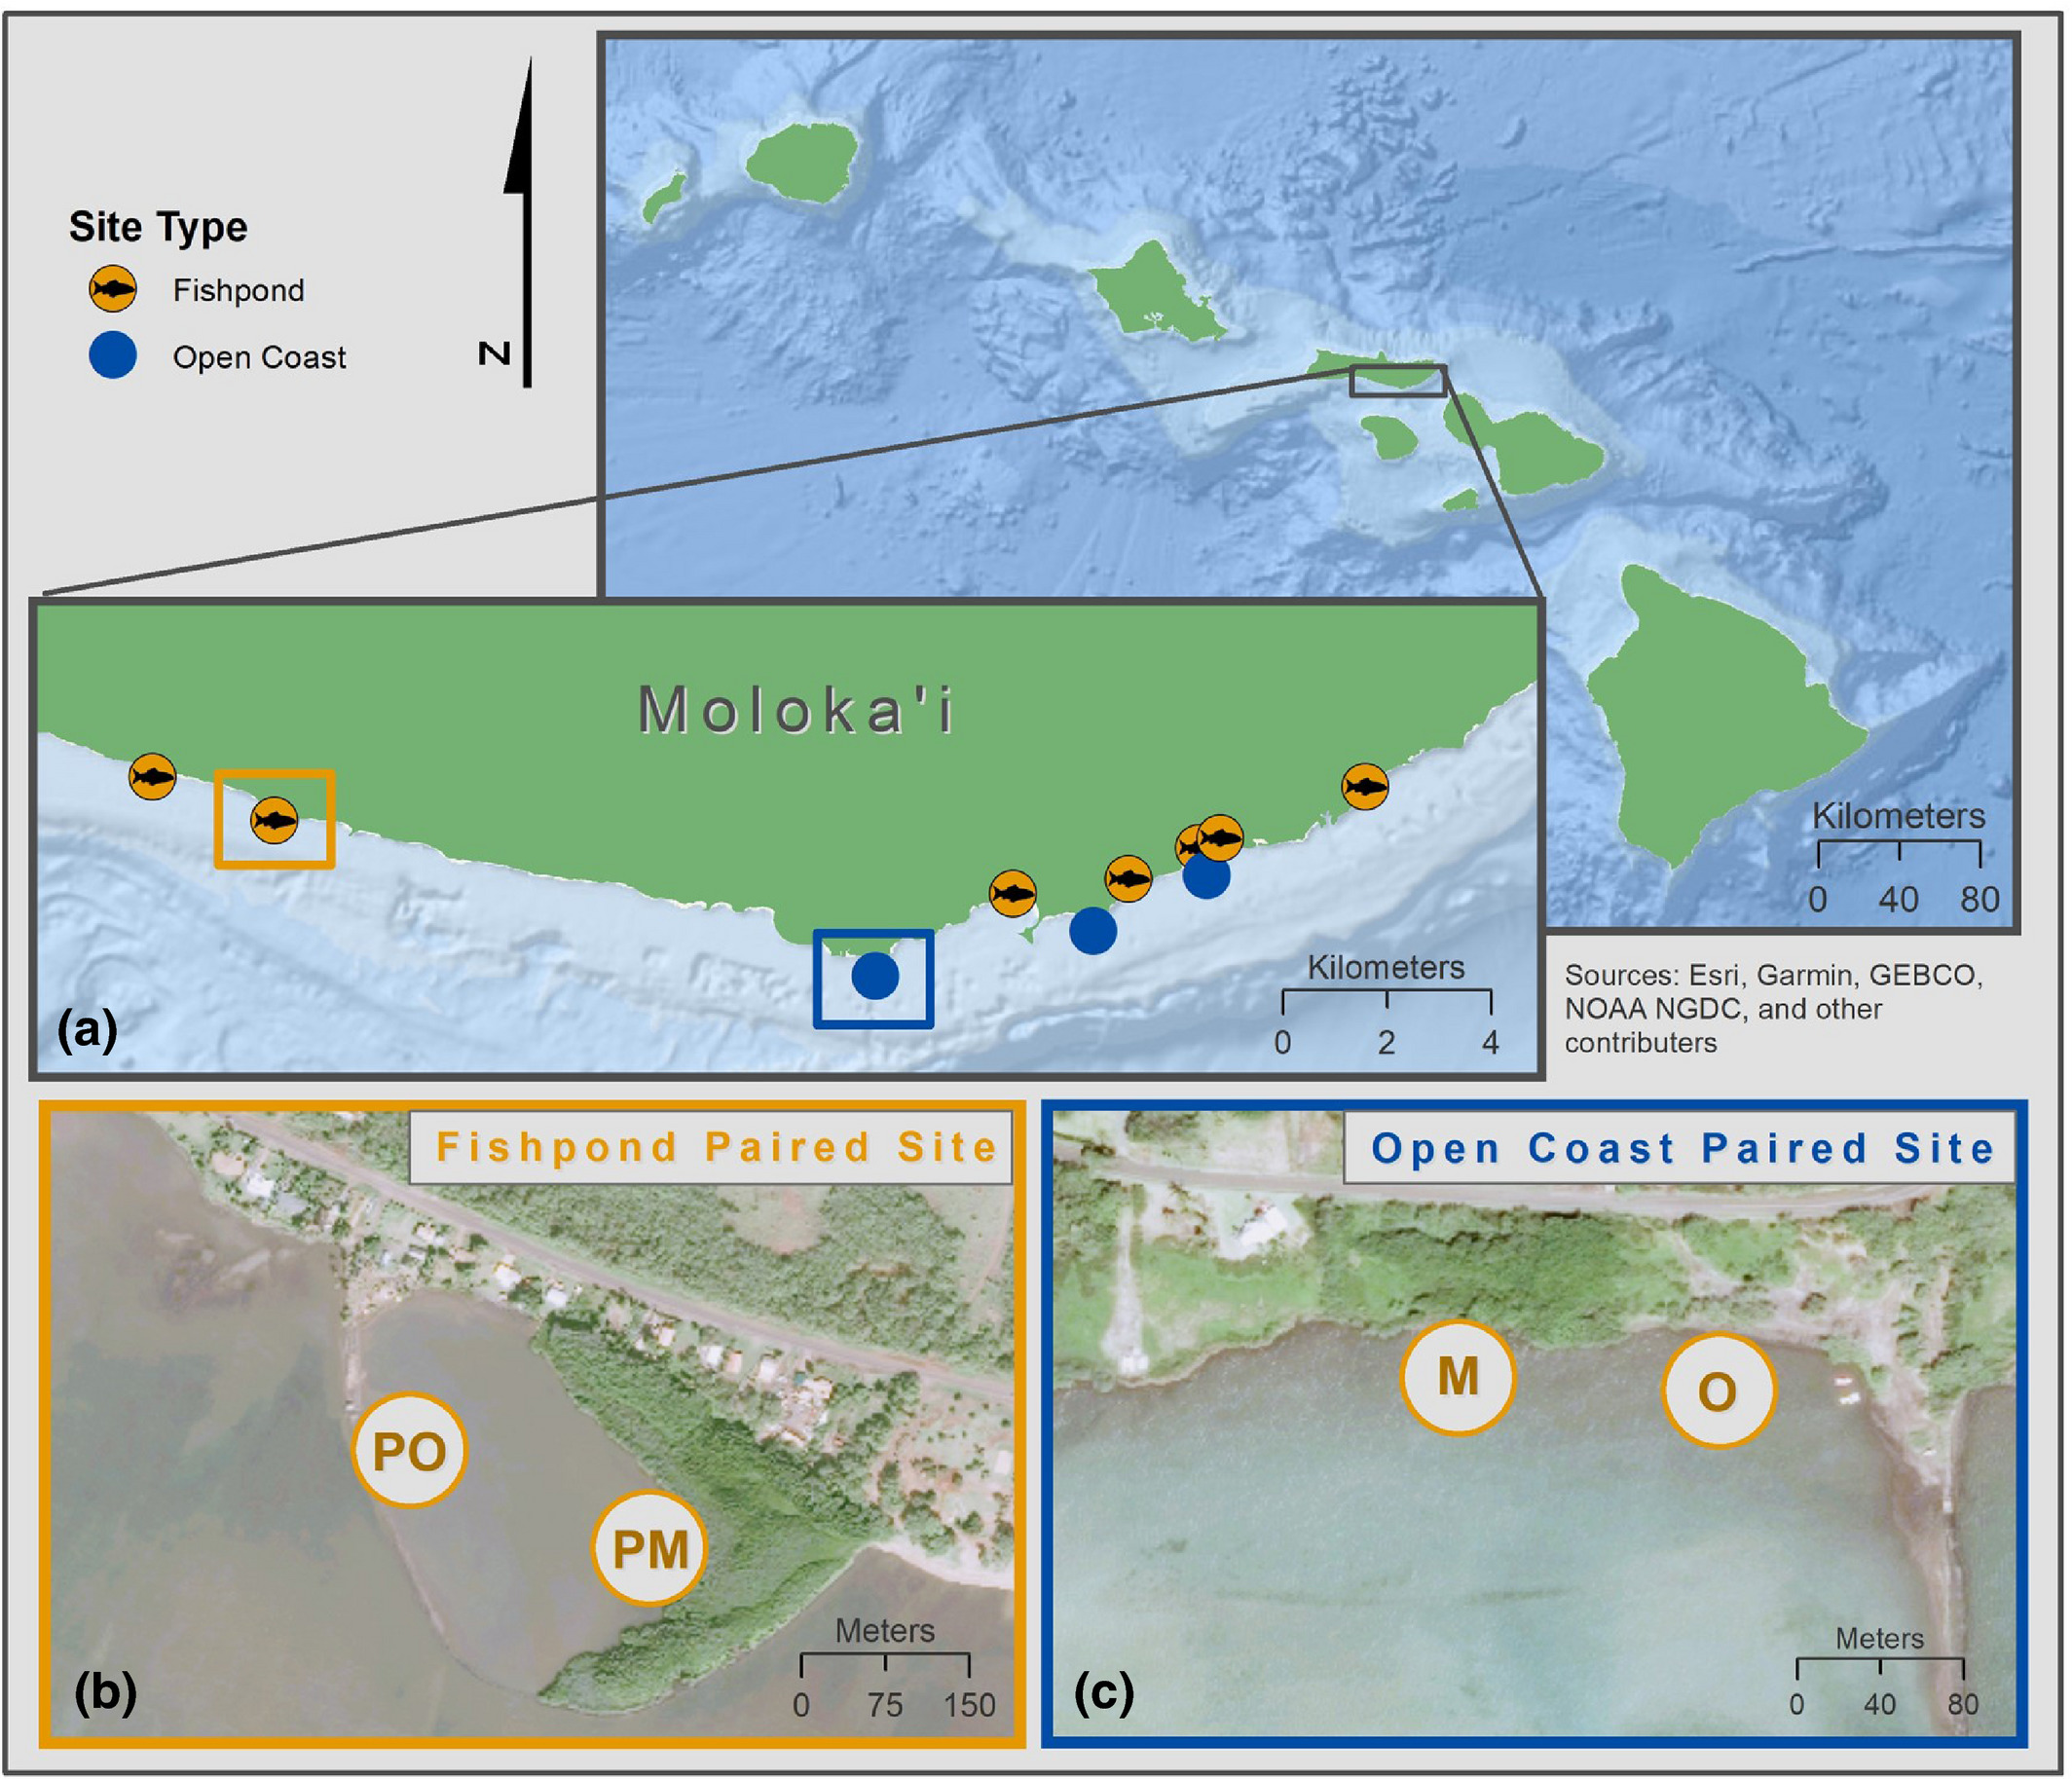 The island of Moloka'i and its location in the Hawaiian Islands